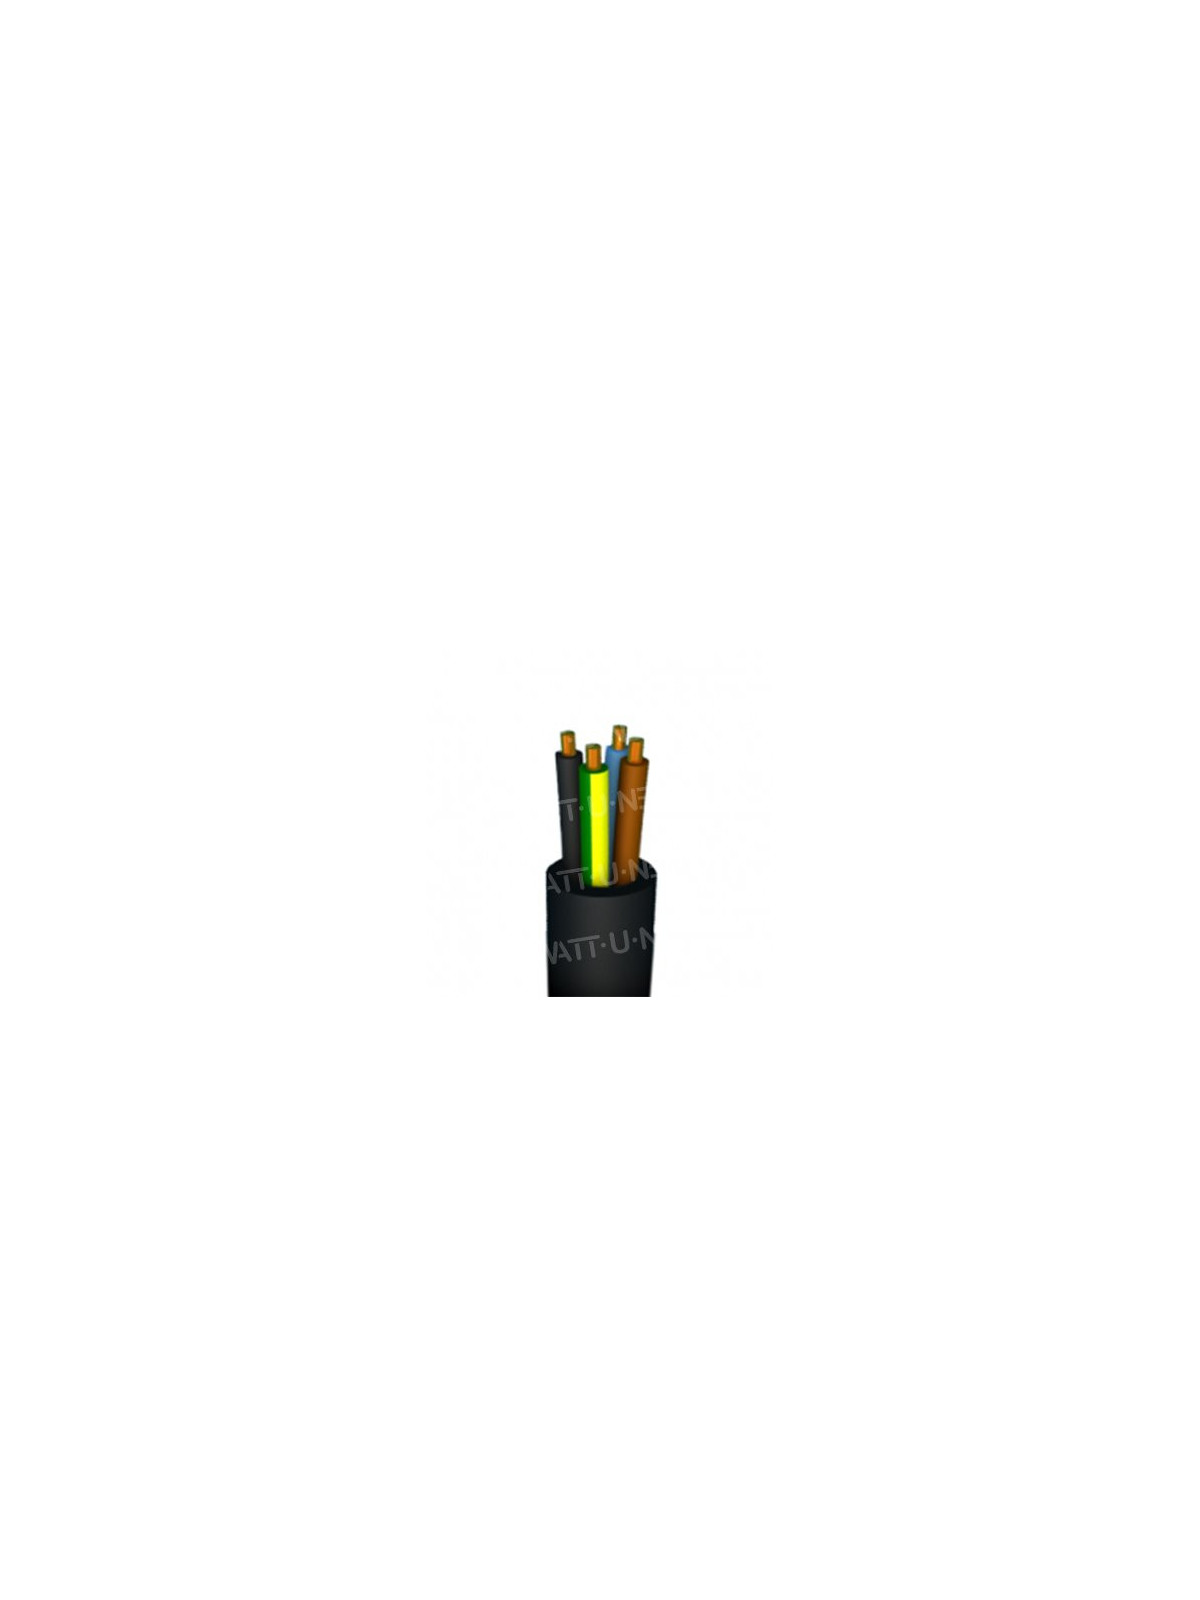 Câble H07RN-F ECA 4G6 450/750V - 1m